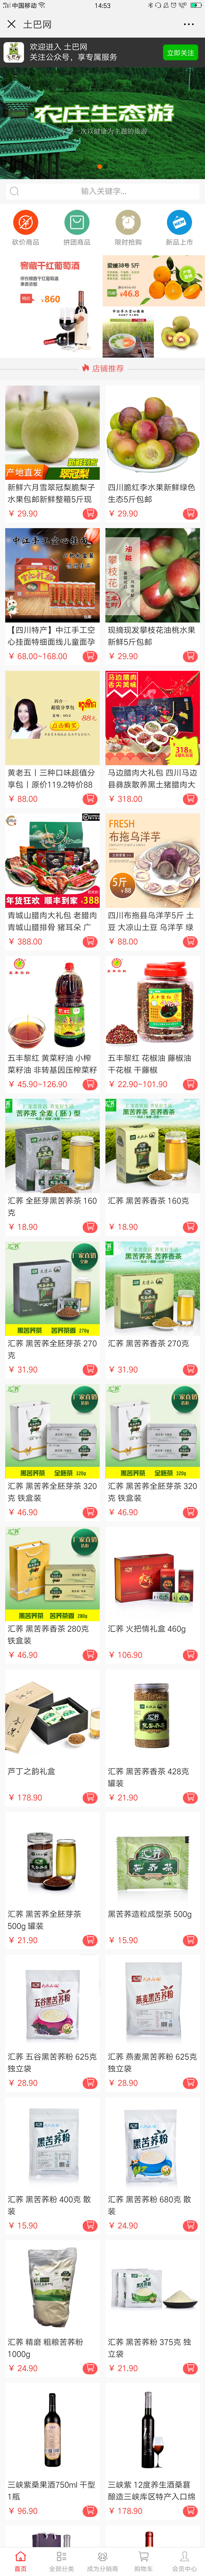 食品绿色成都-成都土巴网科技有限公司微分销豪华版.jpg